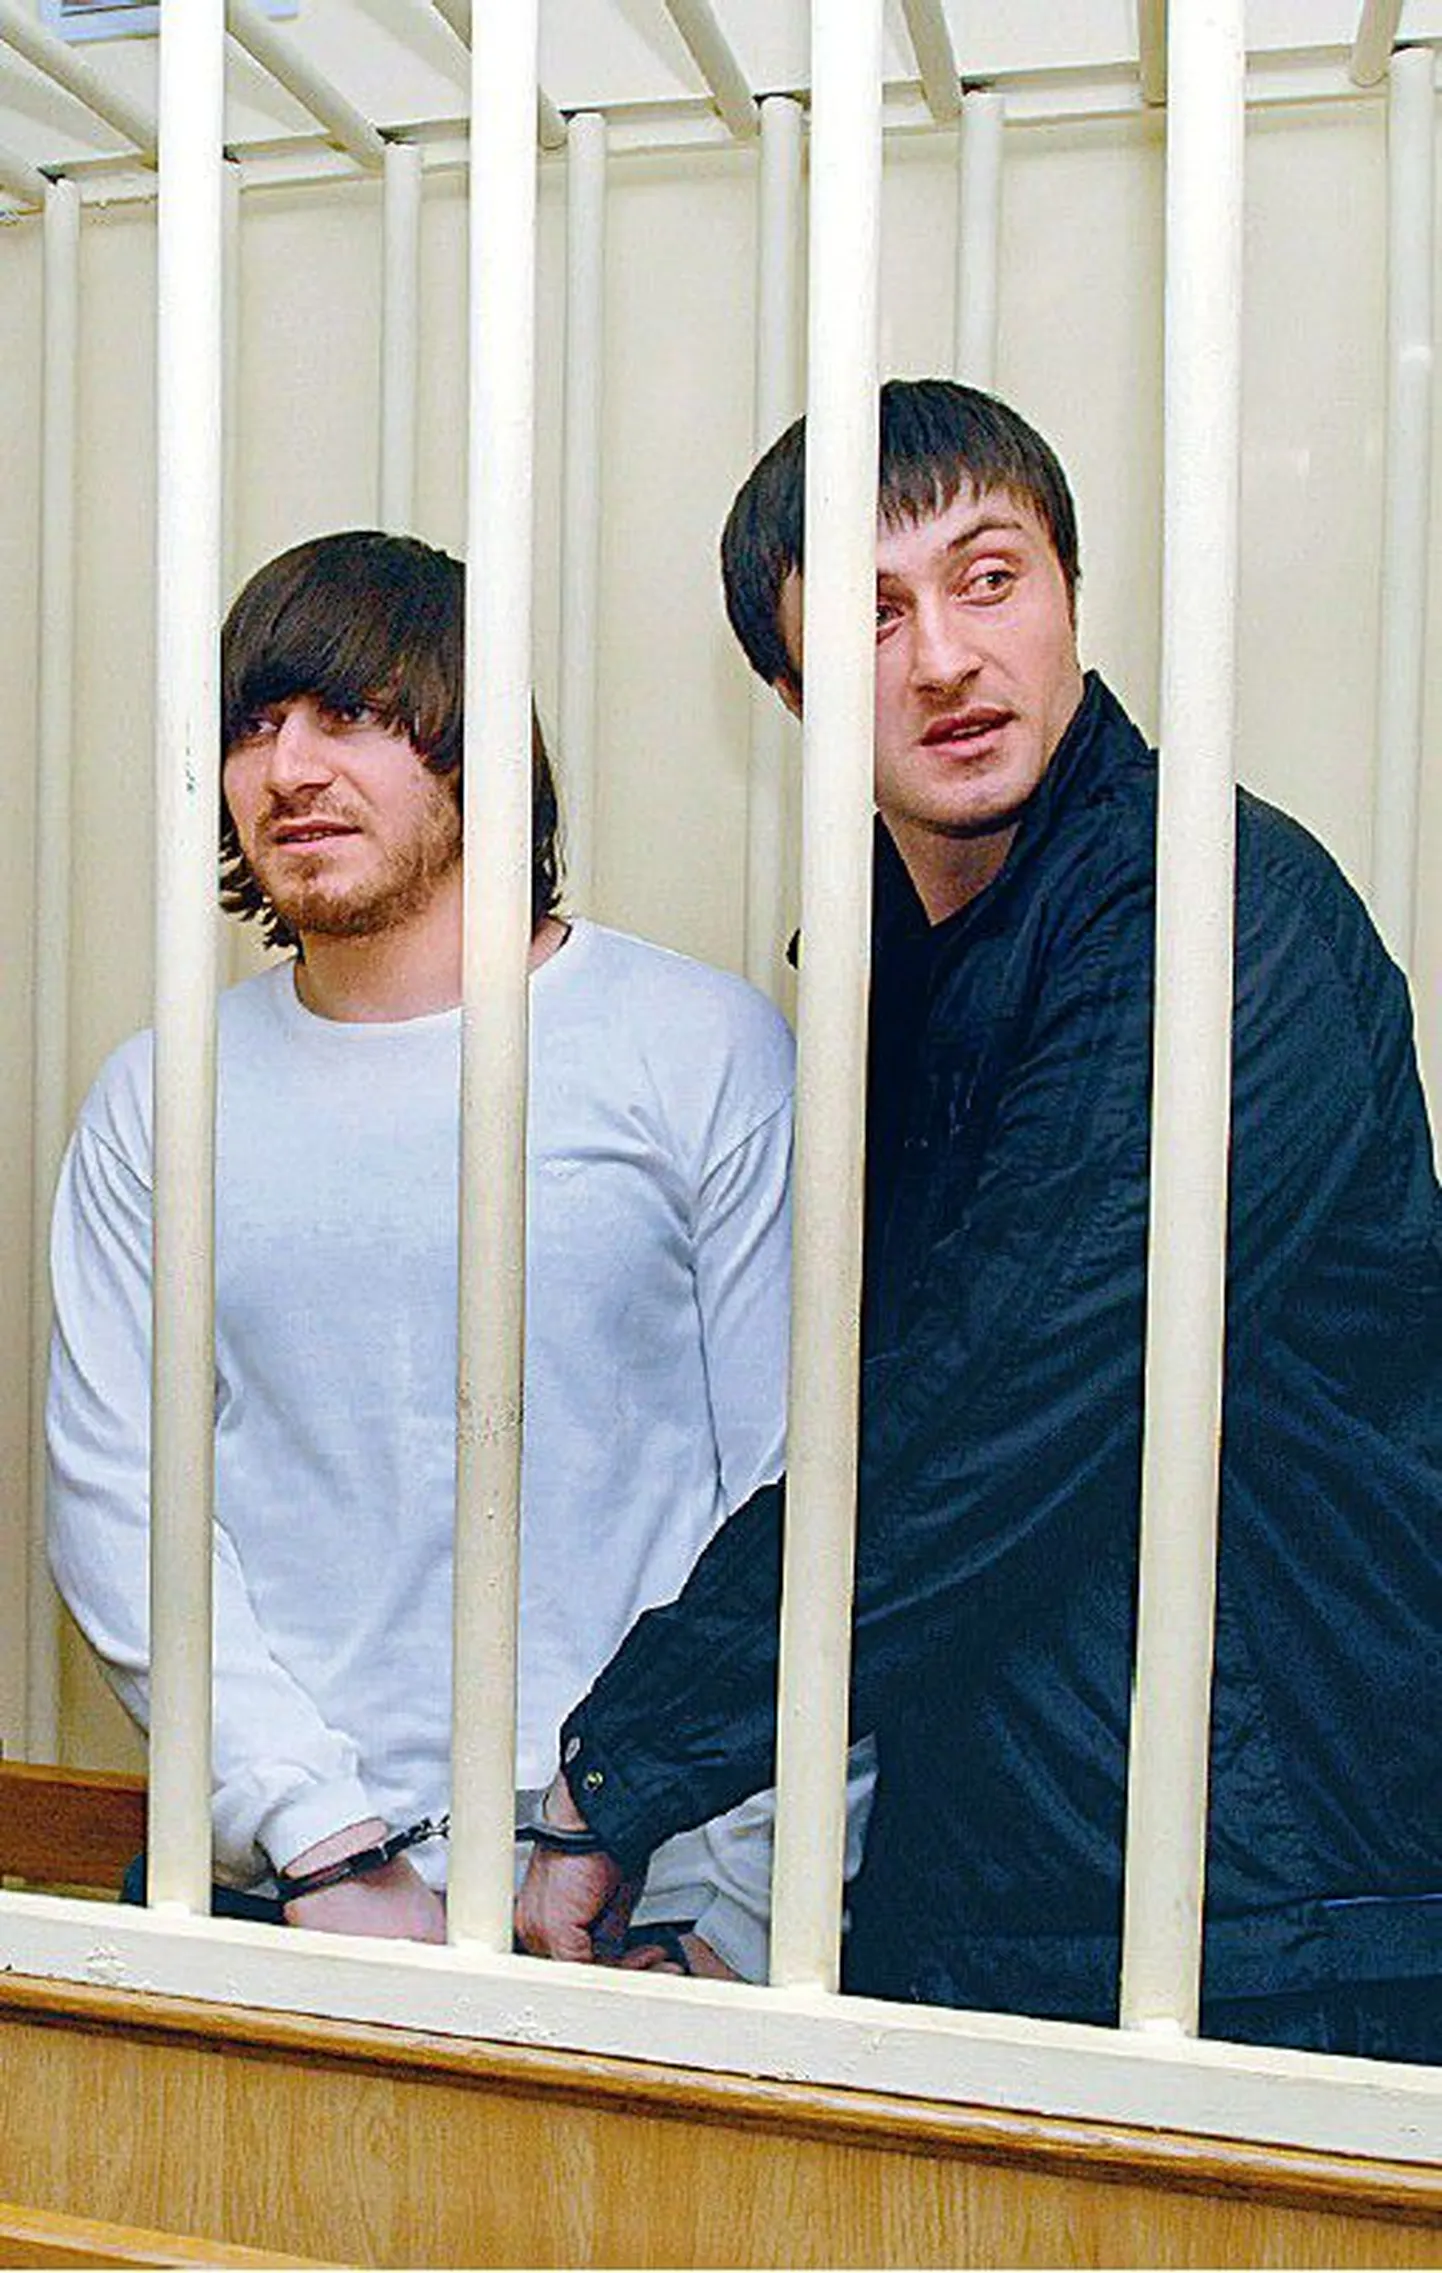 Džabrail ja Ibragim Mahmudov (vasakult) Moskva kohtus. Nende väidetavalt mõrva toime pannud vend on aga endiselt kadunud.